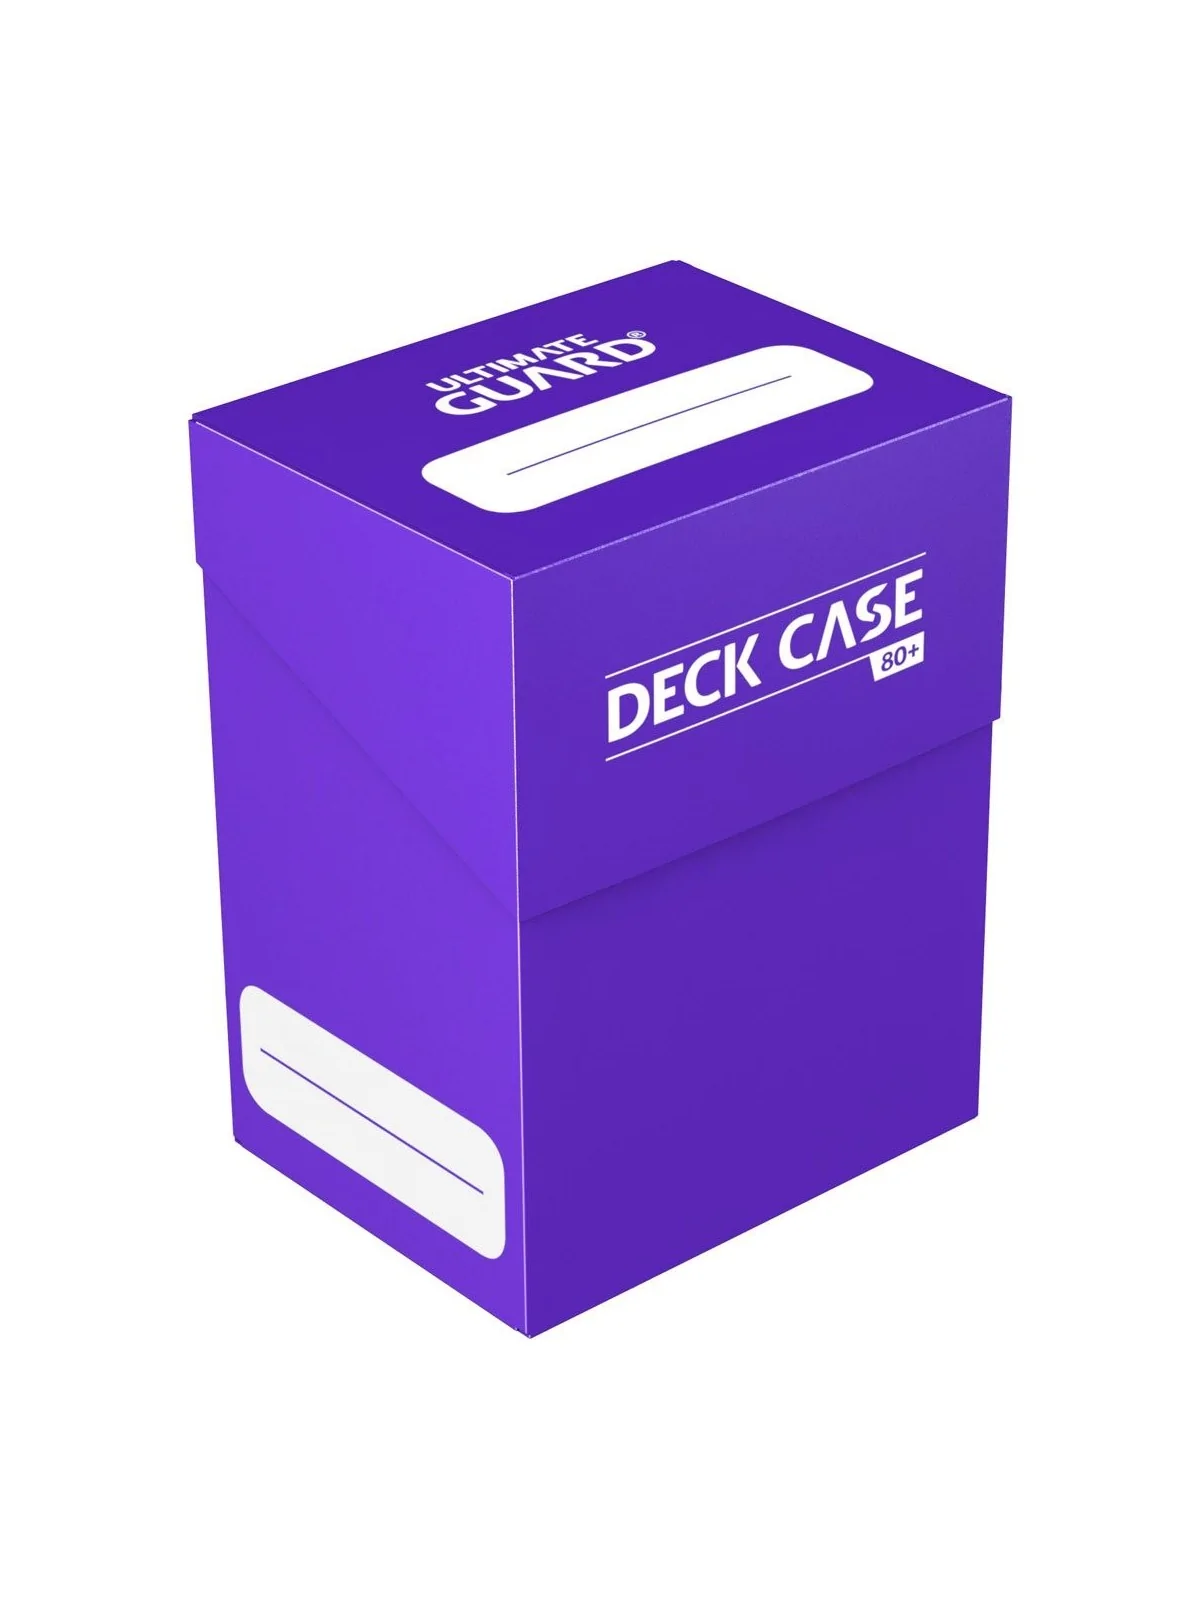 Comprar Ultimate Guard Deck Case Tamaño Estandar 80+ Violeta barato al